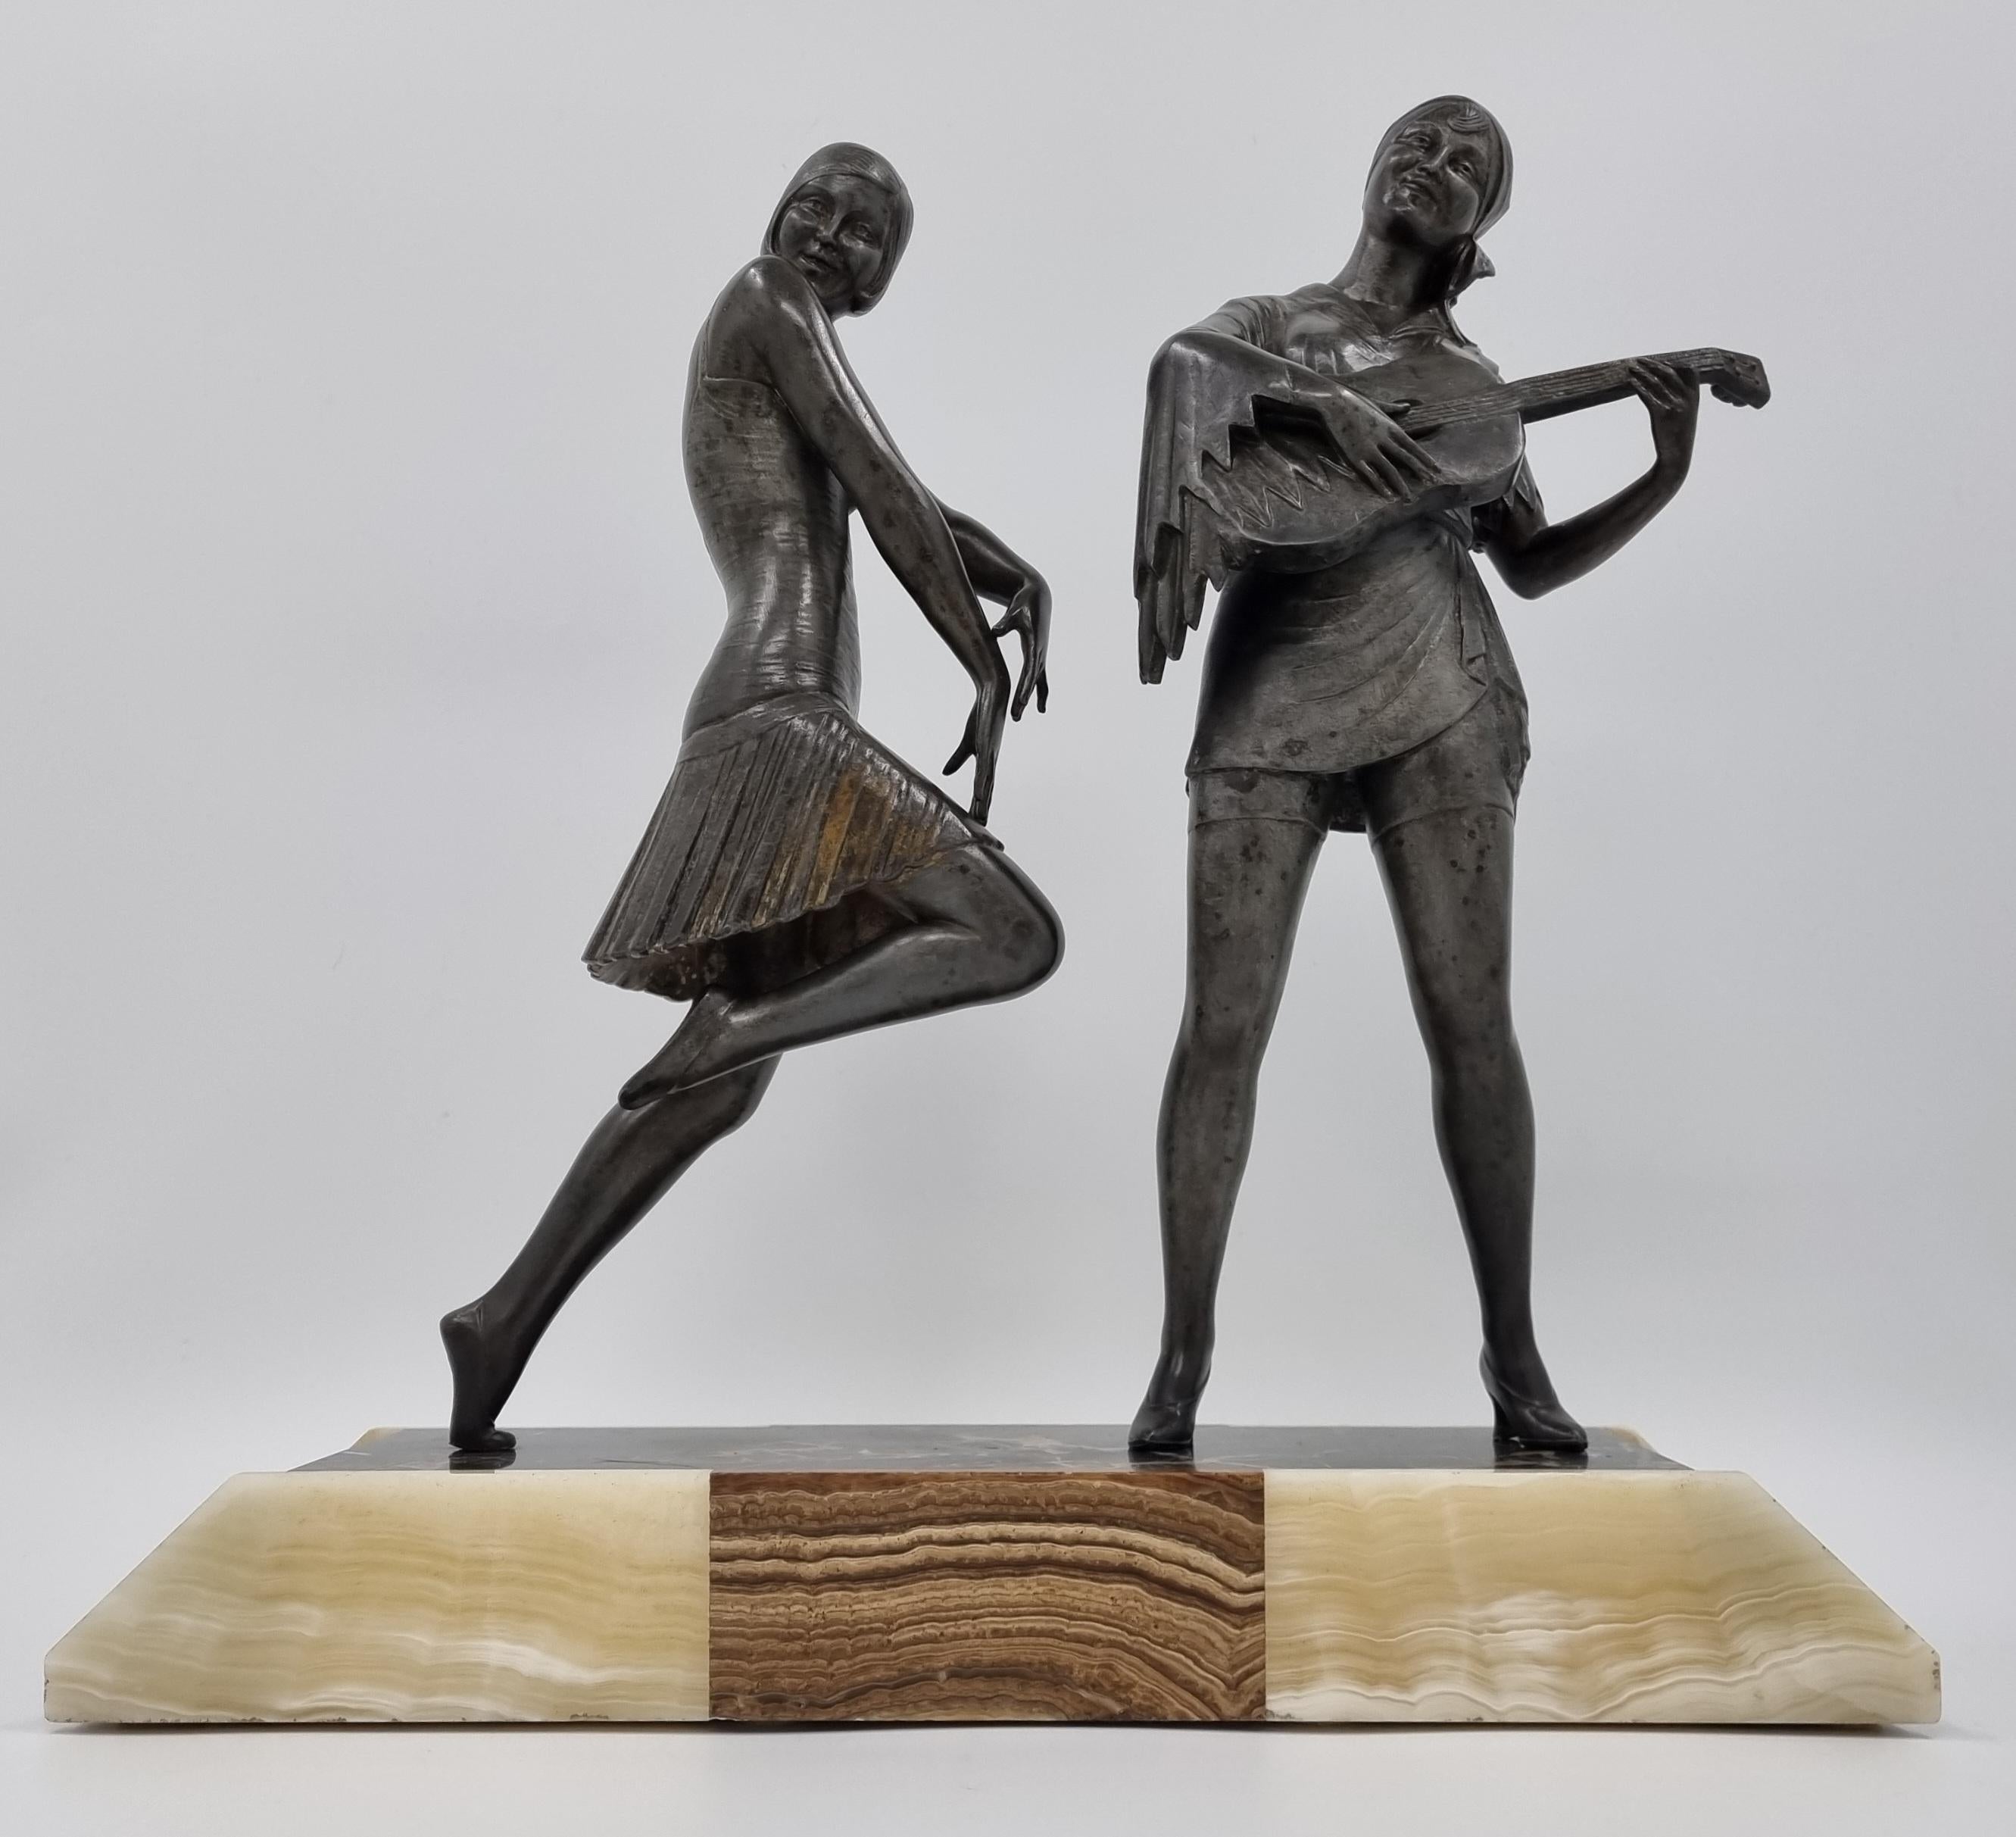 Onyx Art Deco Sculpture Dancer and Musician by Enrique Molins-Balleste For Sale